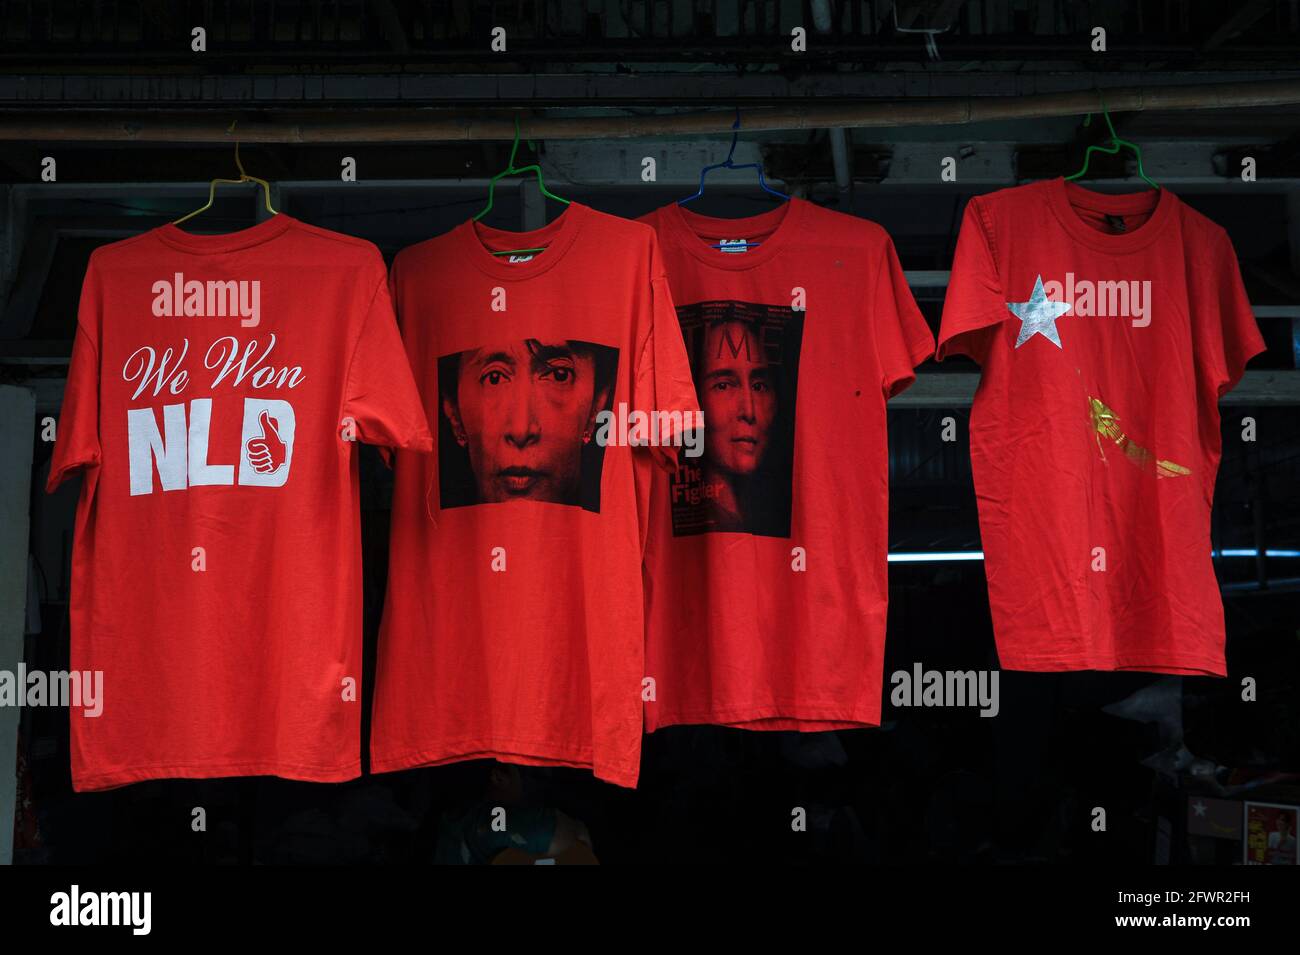 10.11.2015, Yangon, Myanmar, Asien - Rote T-Shirts mit dem Bild von Aung San Suu Kyi und dem Schriftzug "We won NLD" werden in einem Geschäft zum Verkauf angeboten. Stockfoto